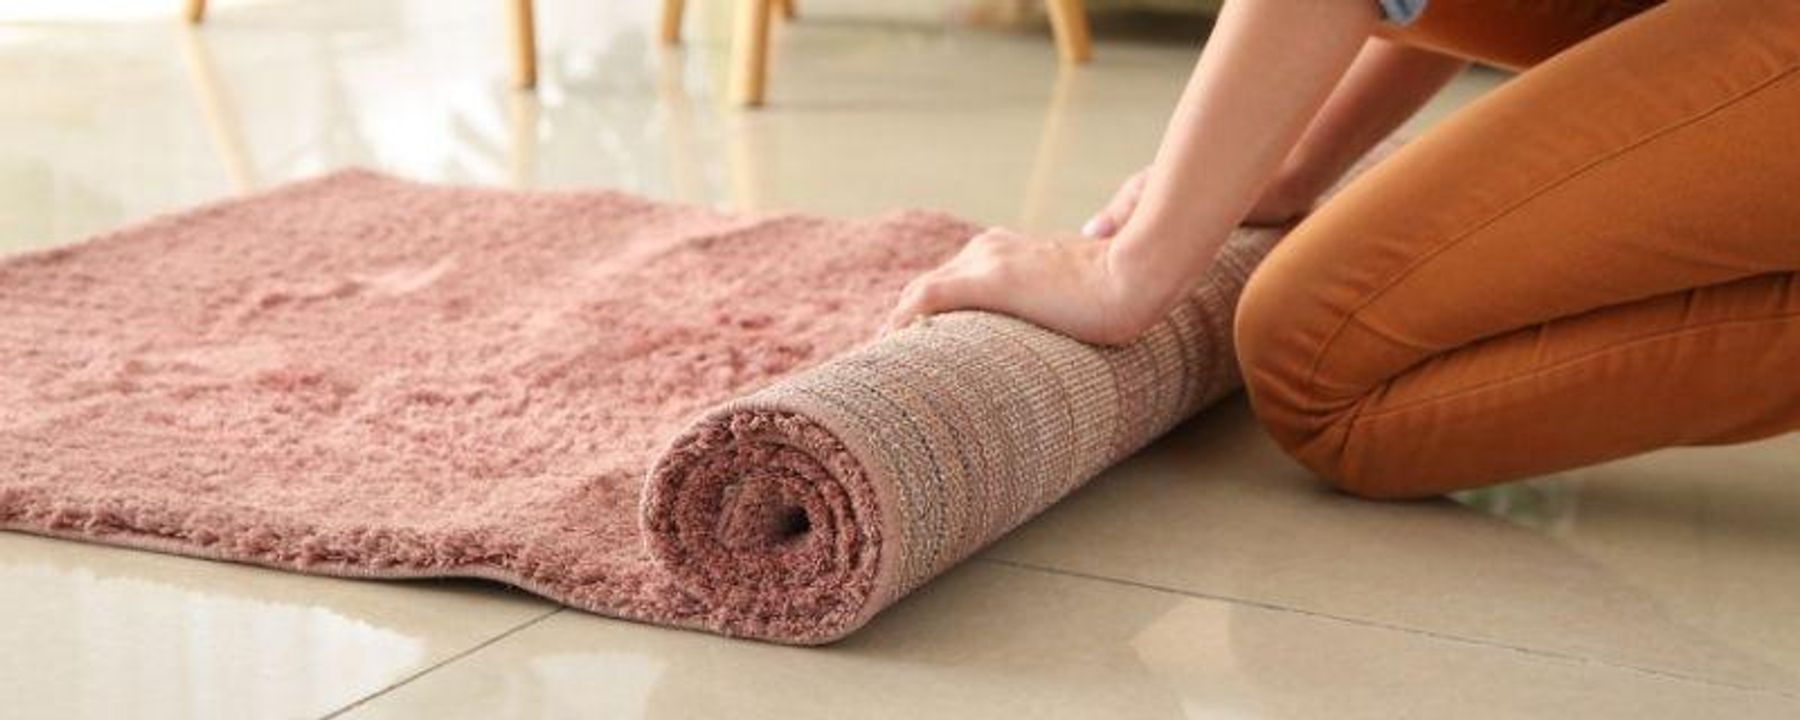 Carpet Padding Buying Guide